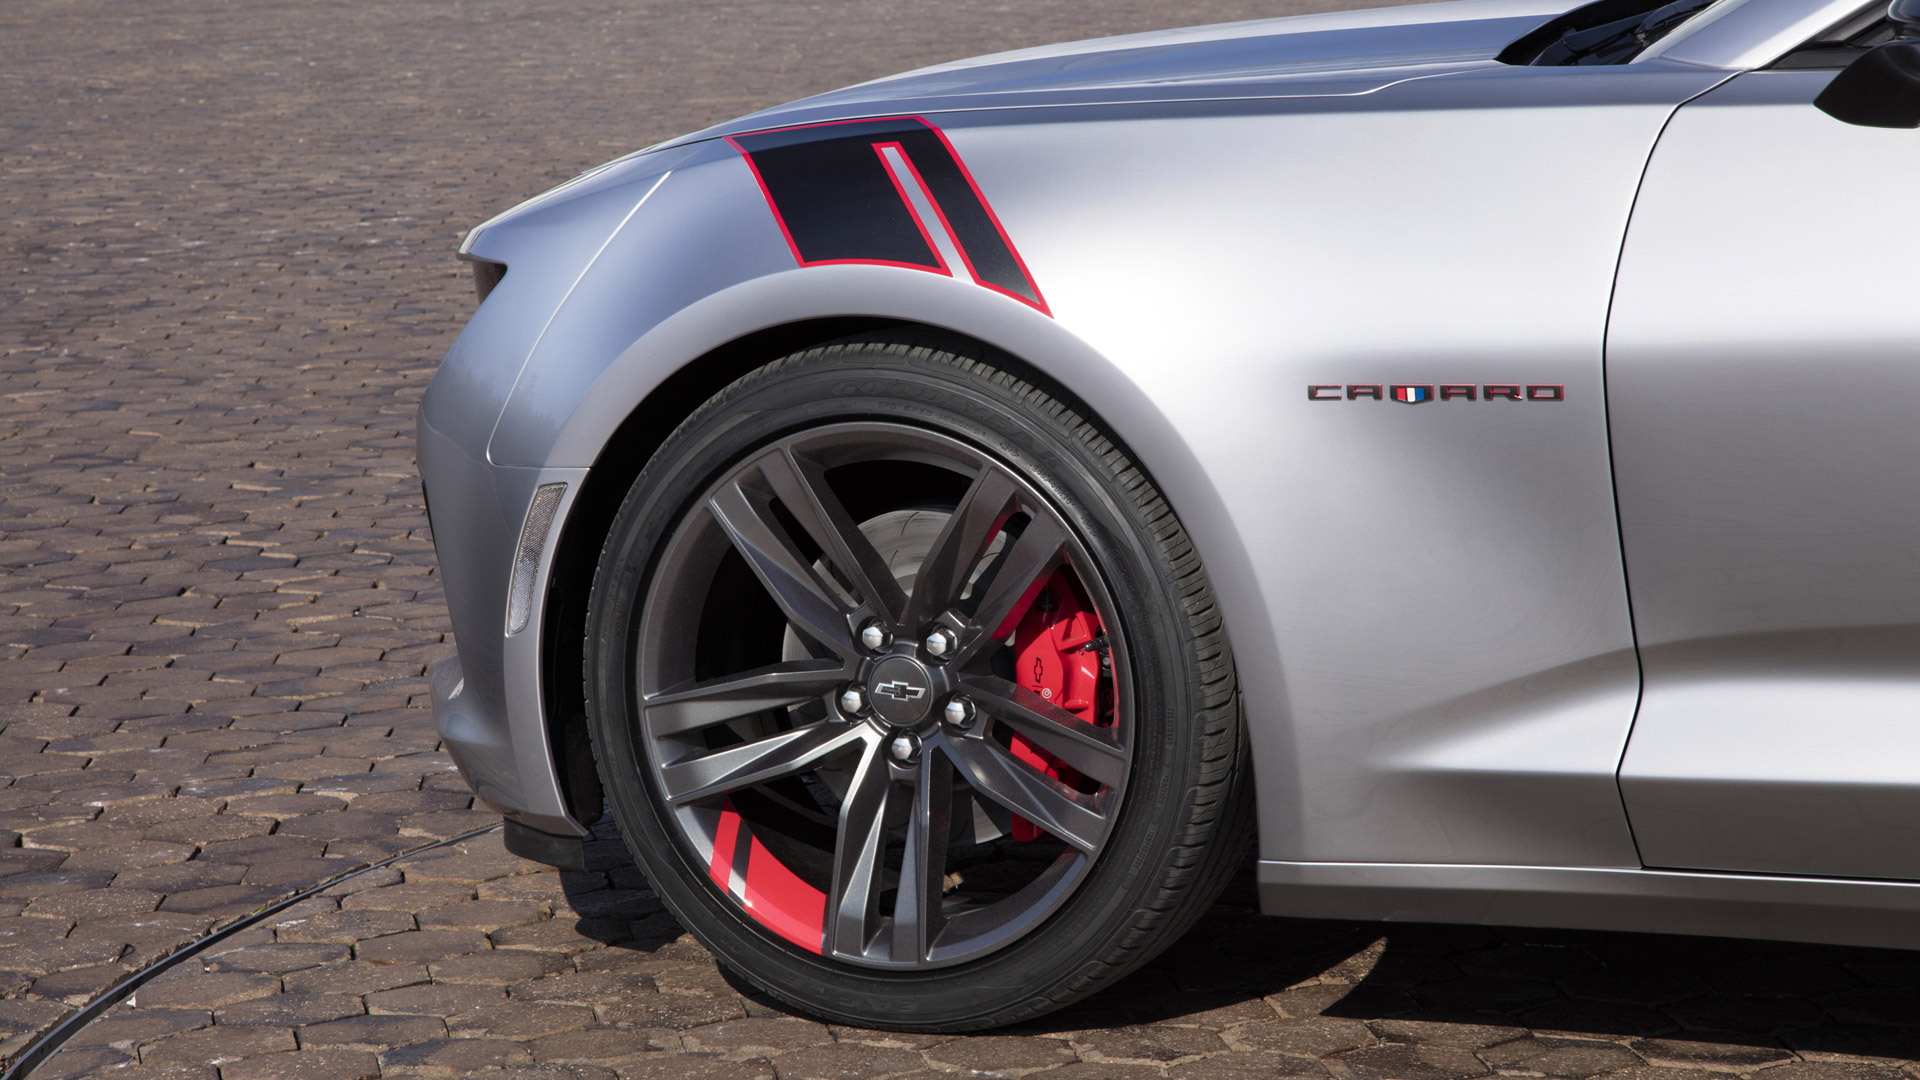 Chevrolet Camaro Red Line Series concept, 2015 SEMA show